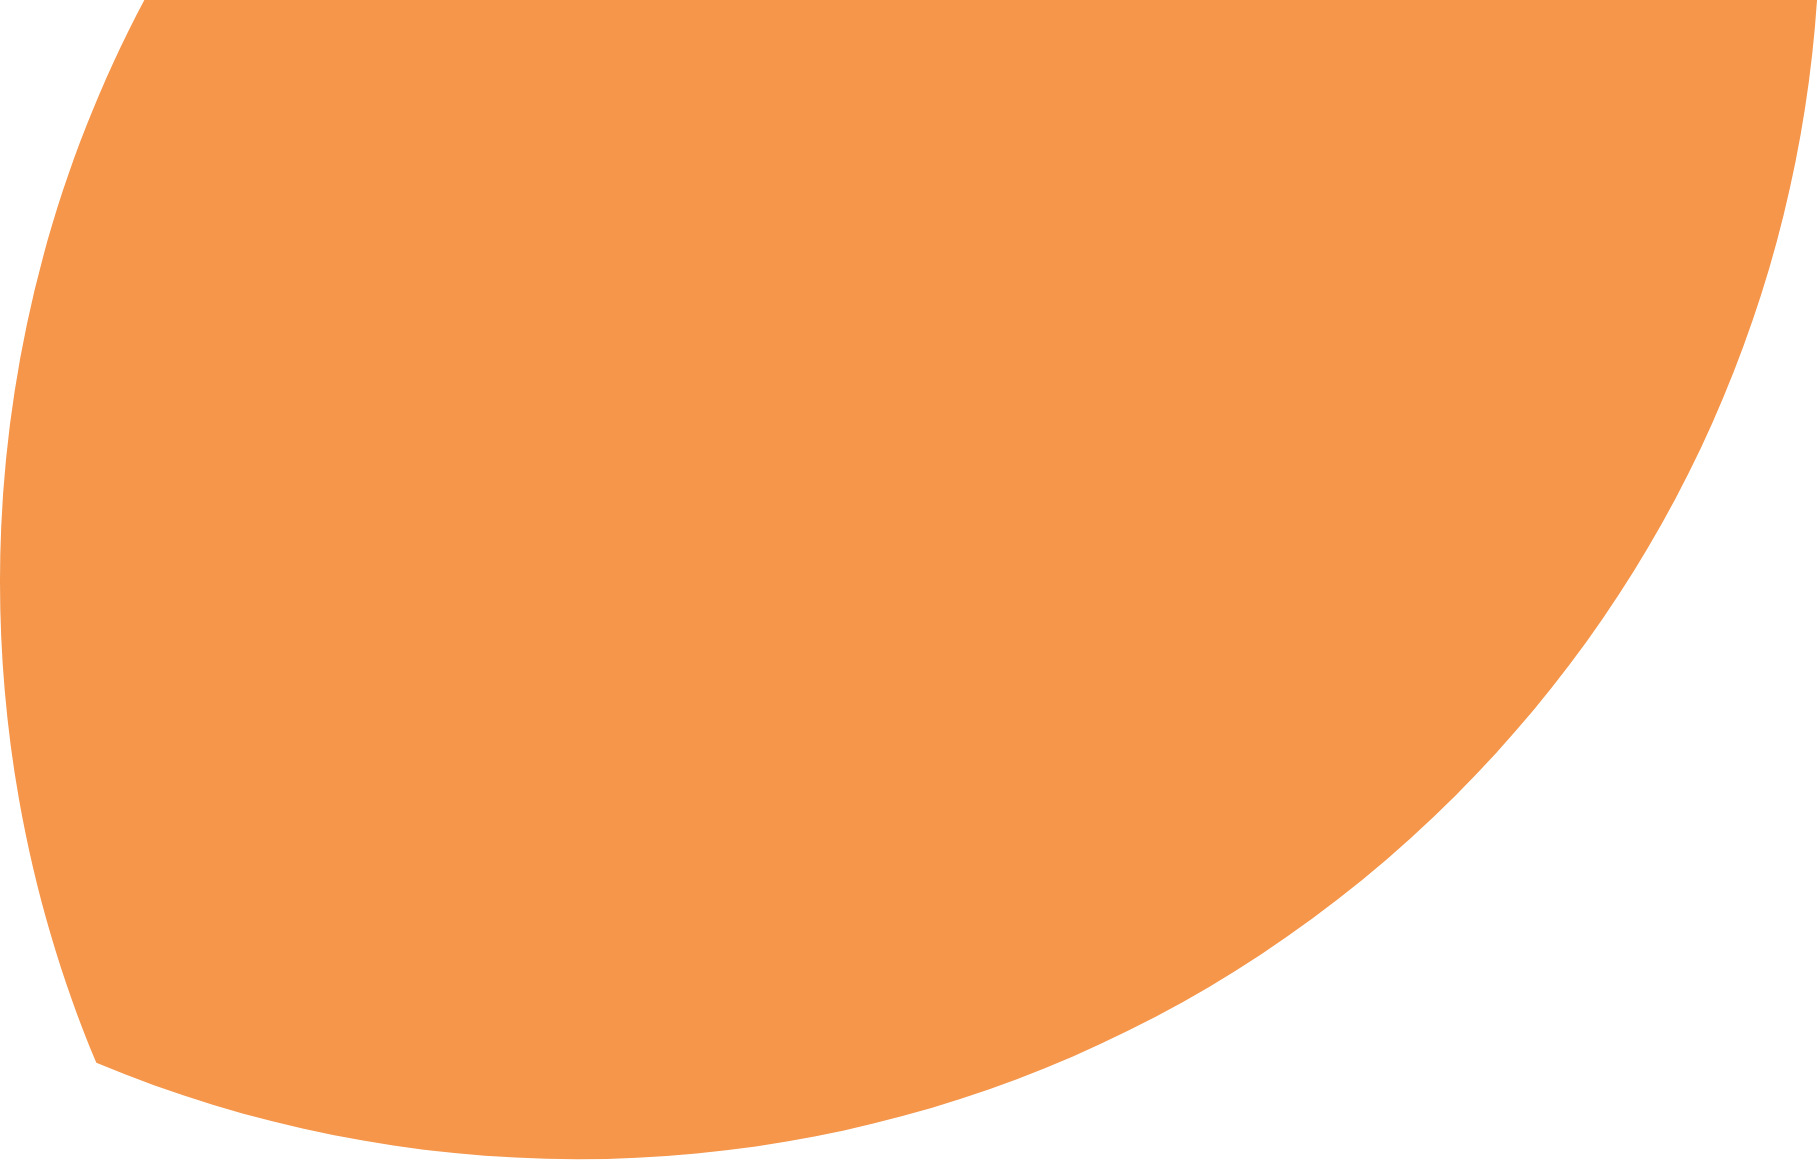 Orange oval